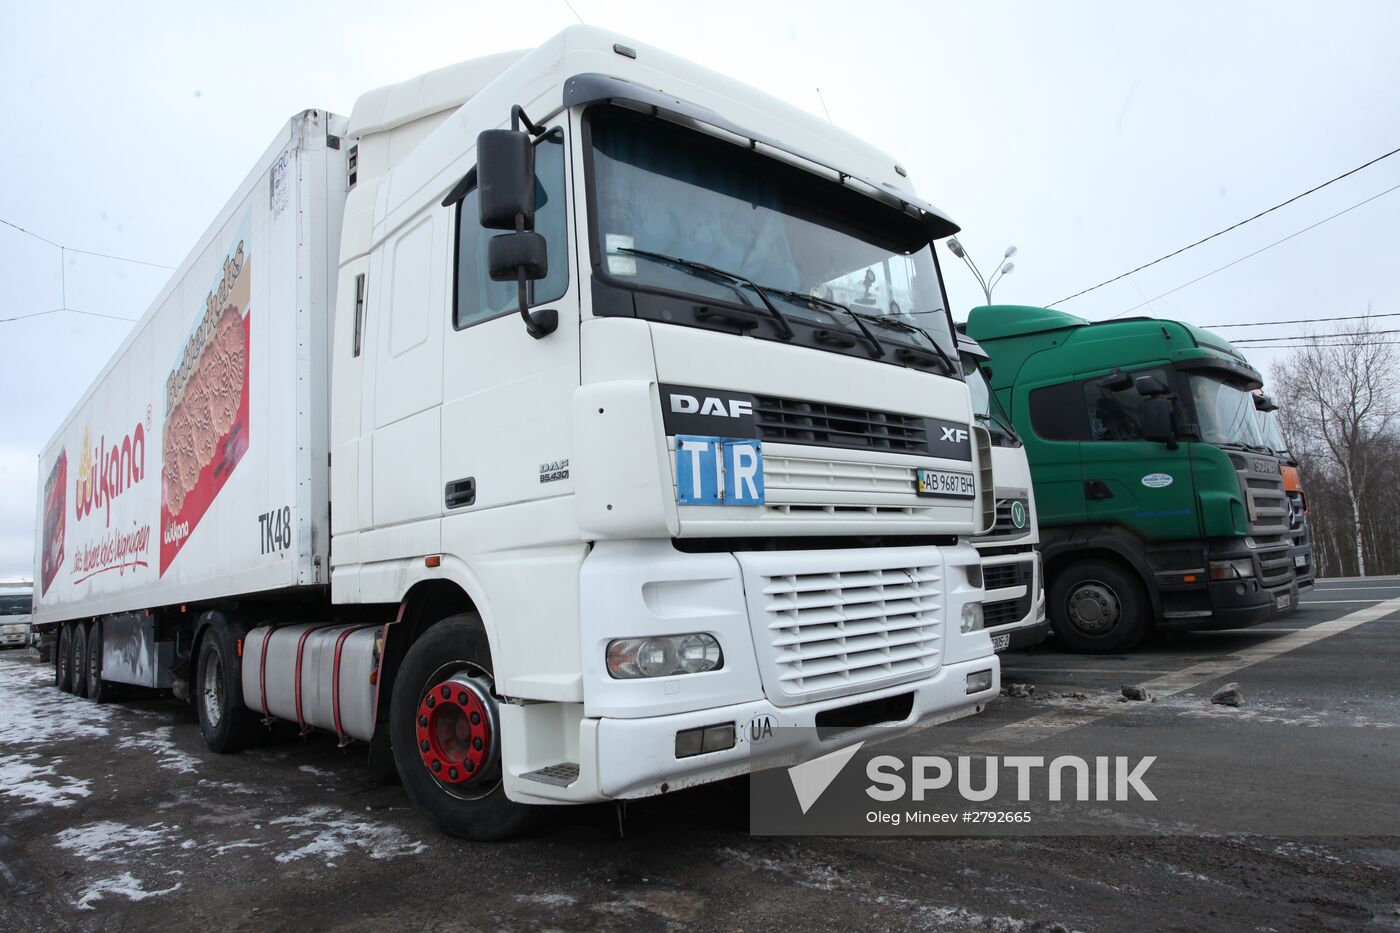 Ukraine and Russia agree on return of trucks blocked at border